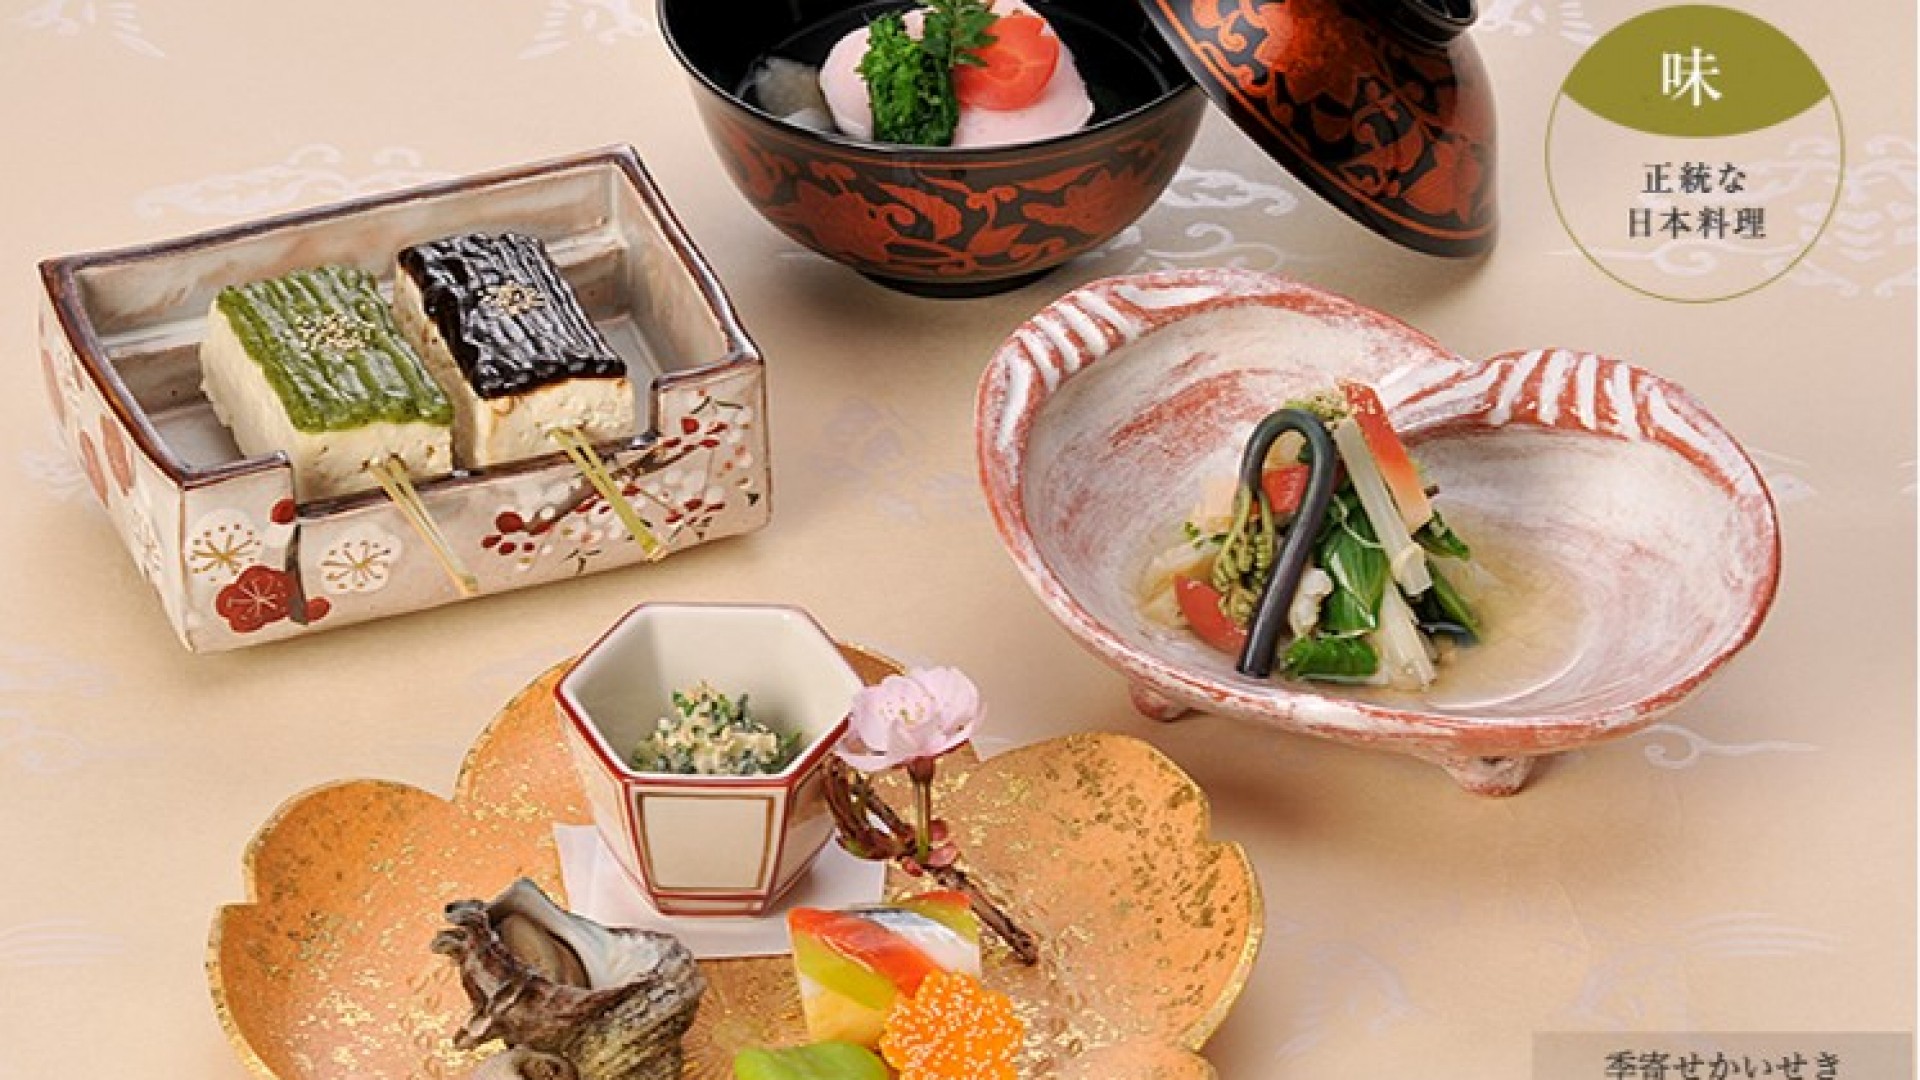 Vier-Jahreszeiten-Küche Japanische Süßigkeiten Ukyo